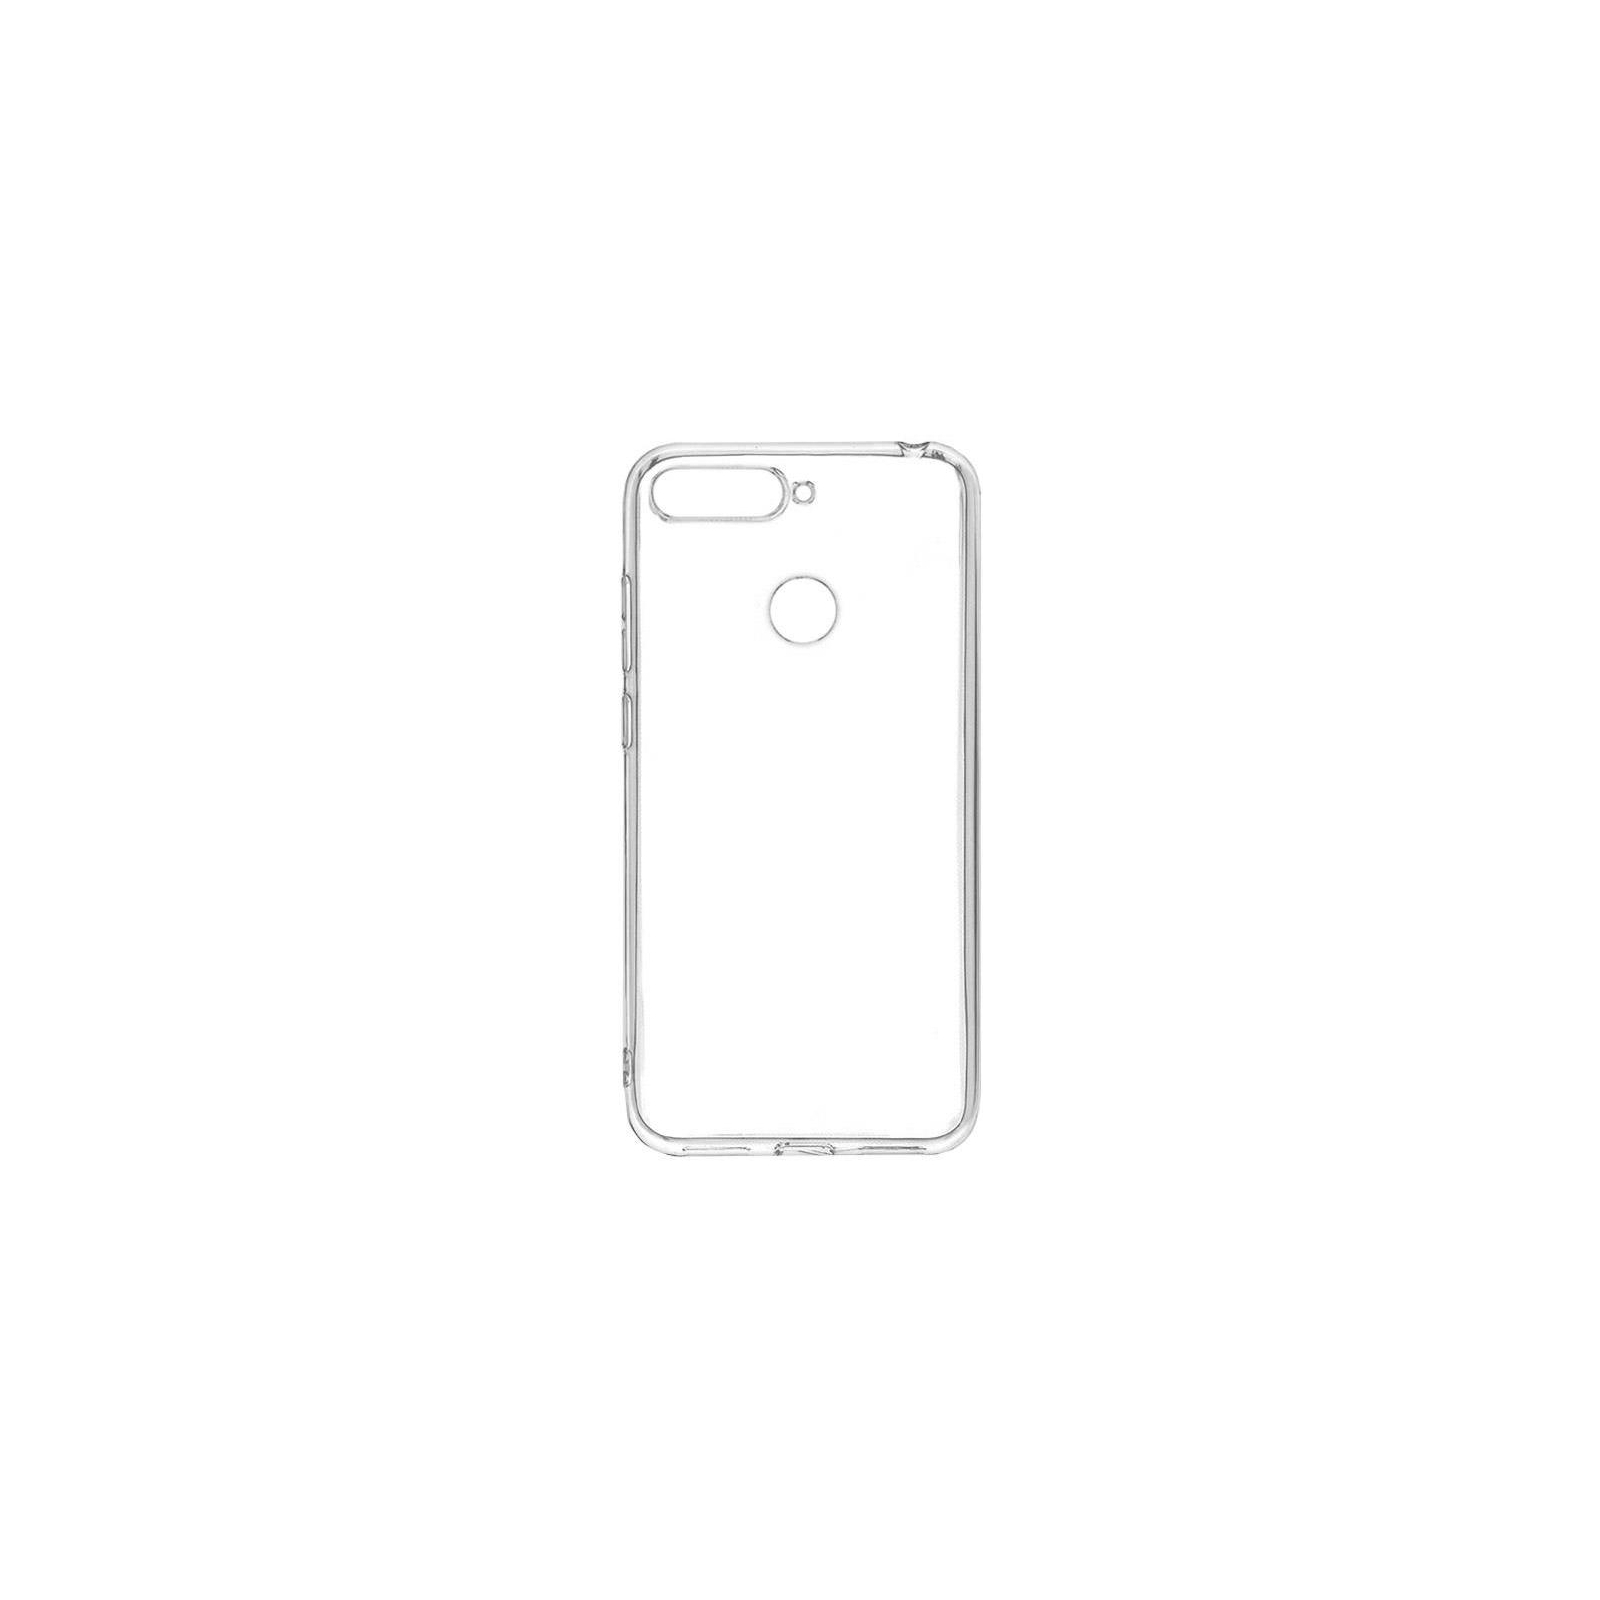 Чехол для мобильного телефона Huawei для Y6 Prime 2018 transperent case (51992438)